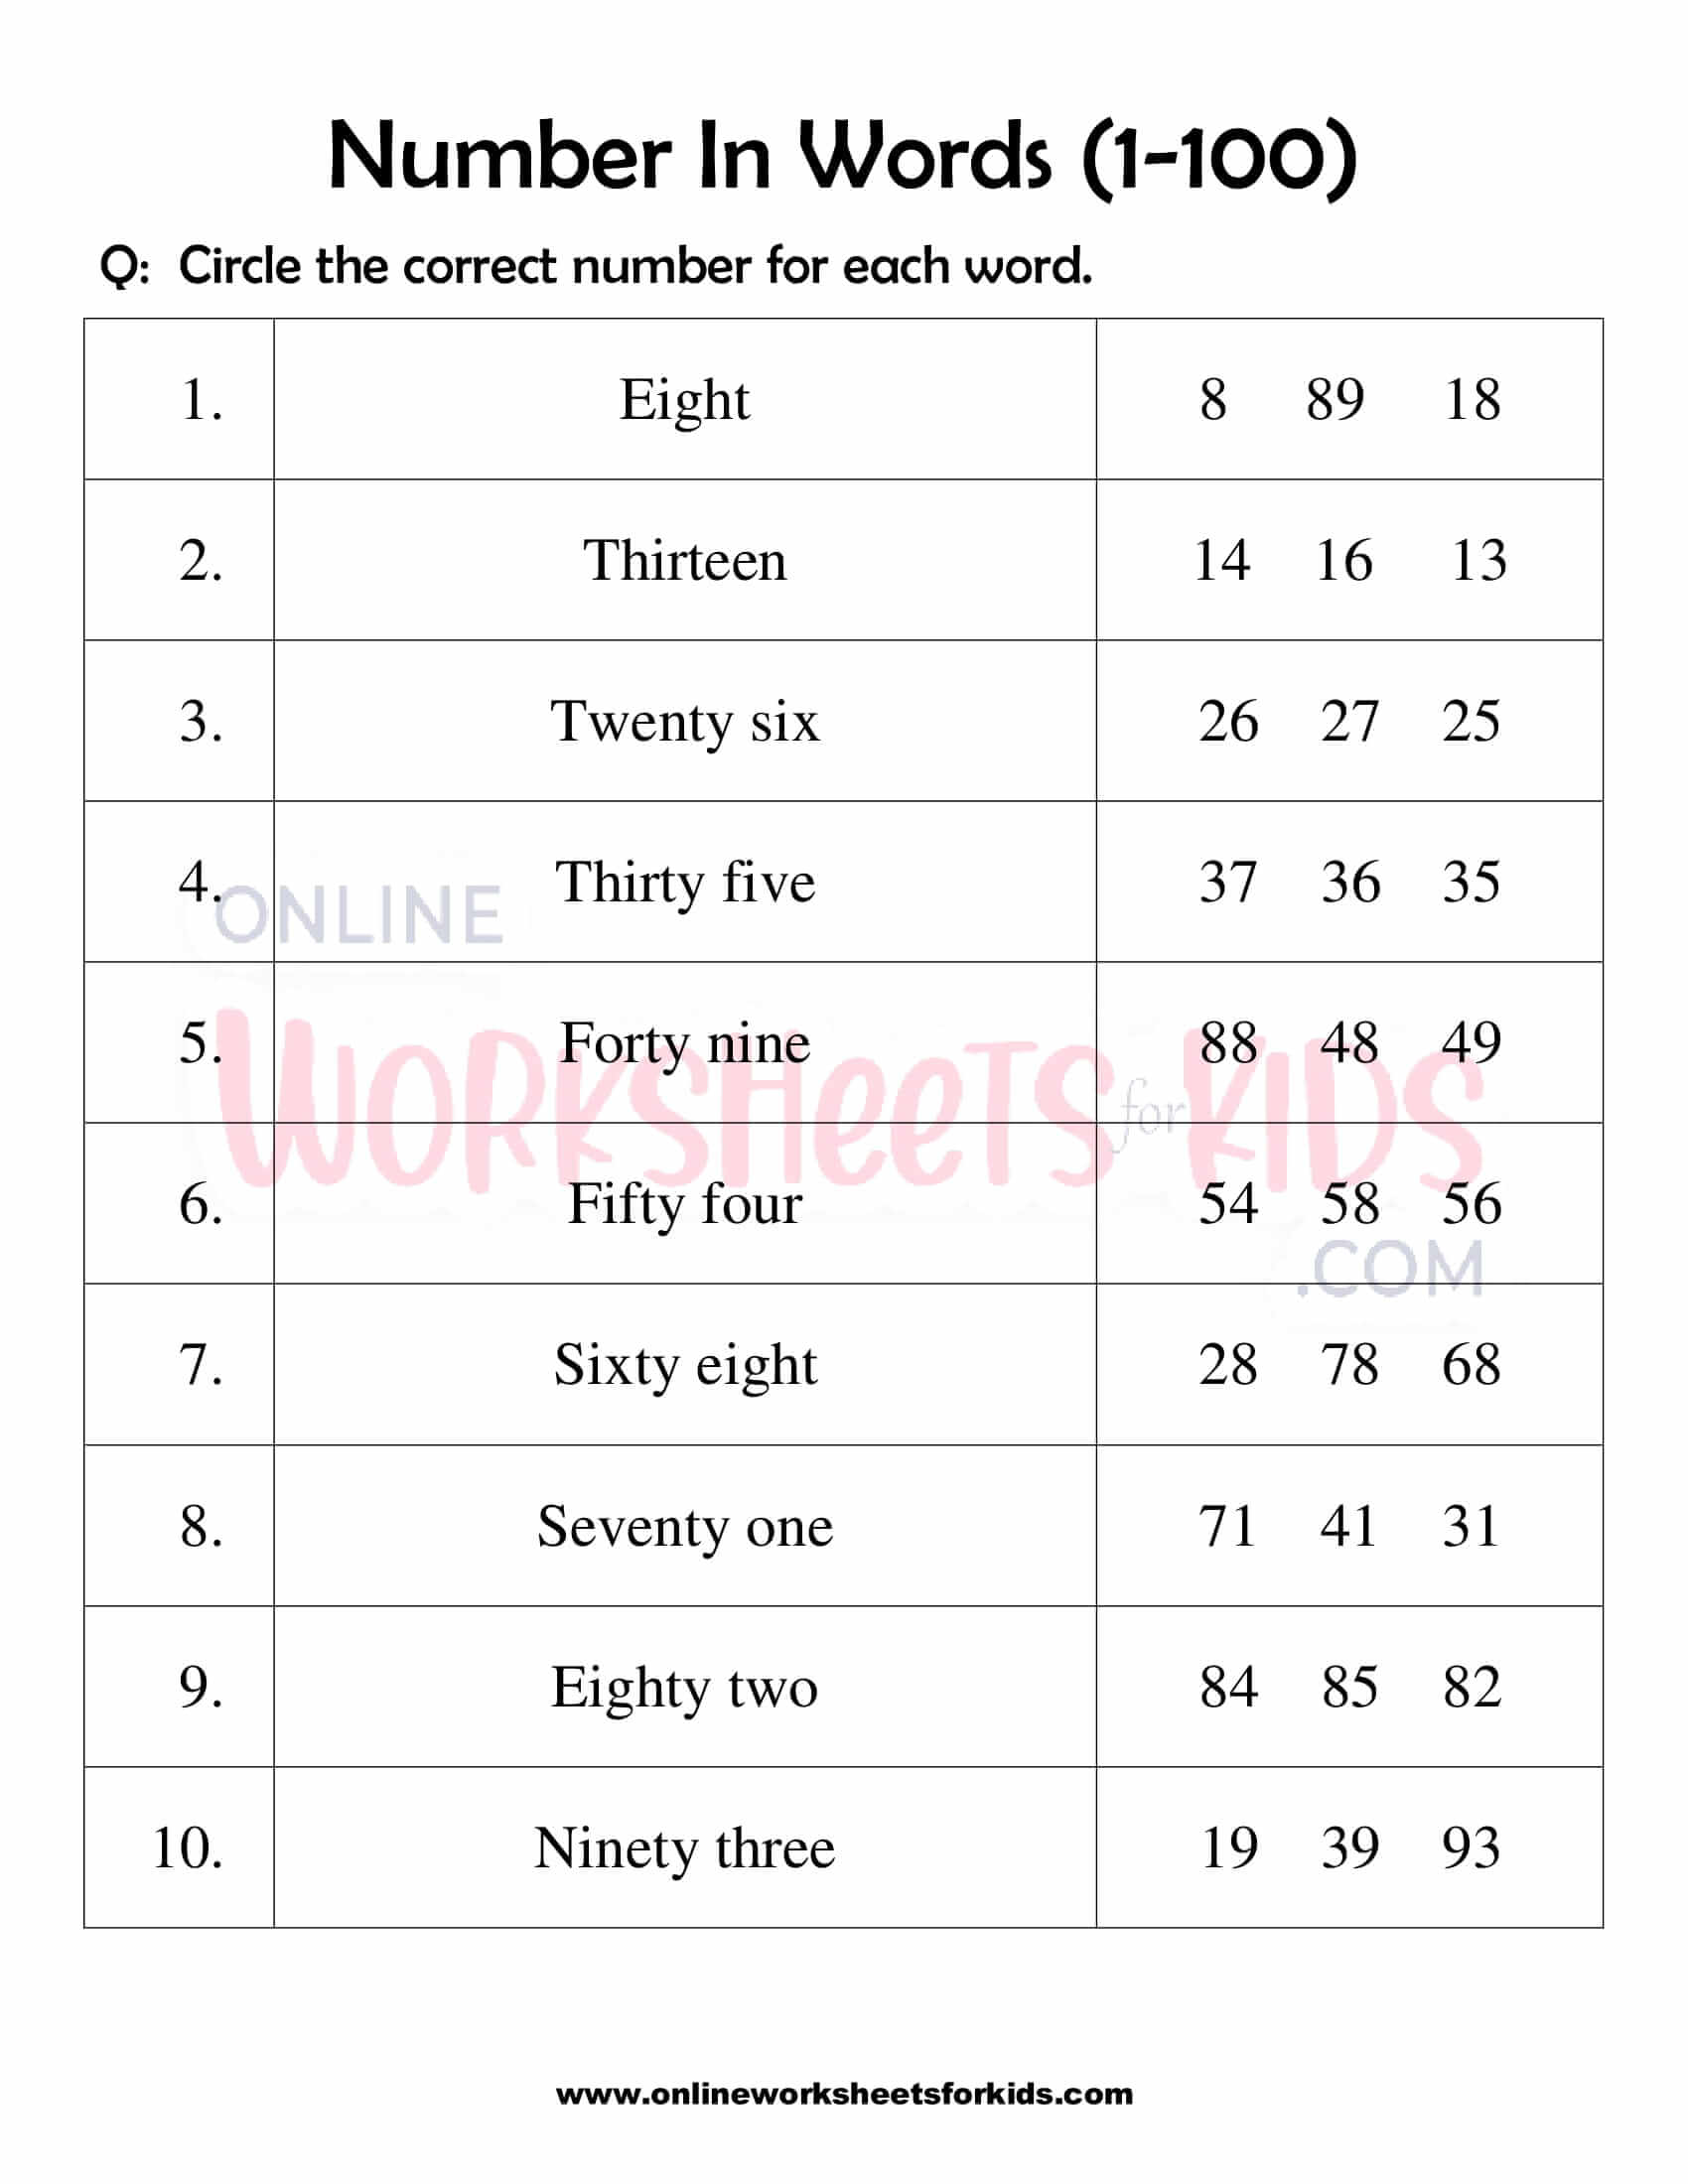 number-words-worksheet-1-100-for-grade-1-6